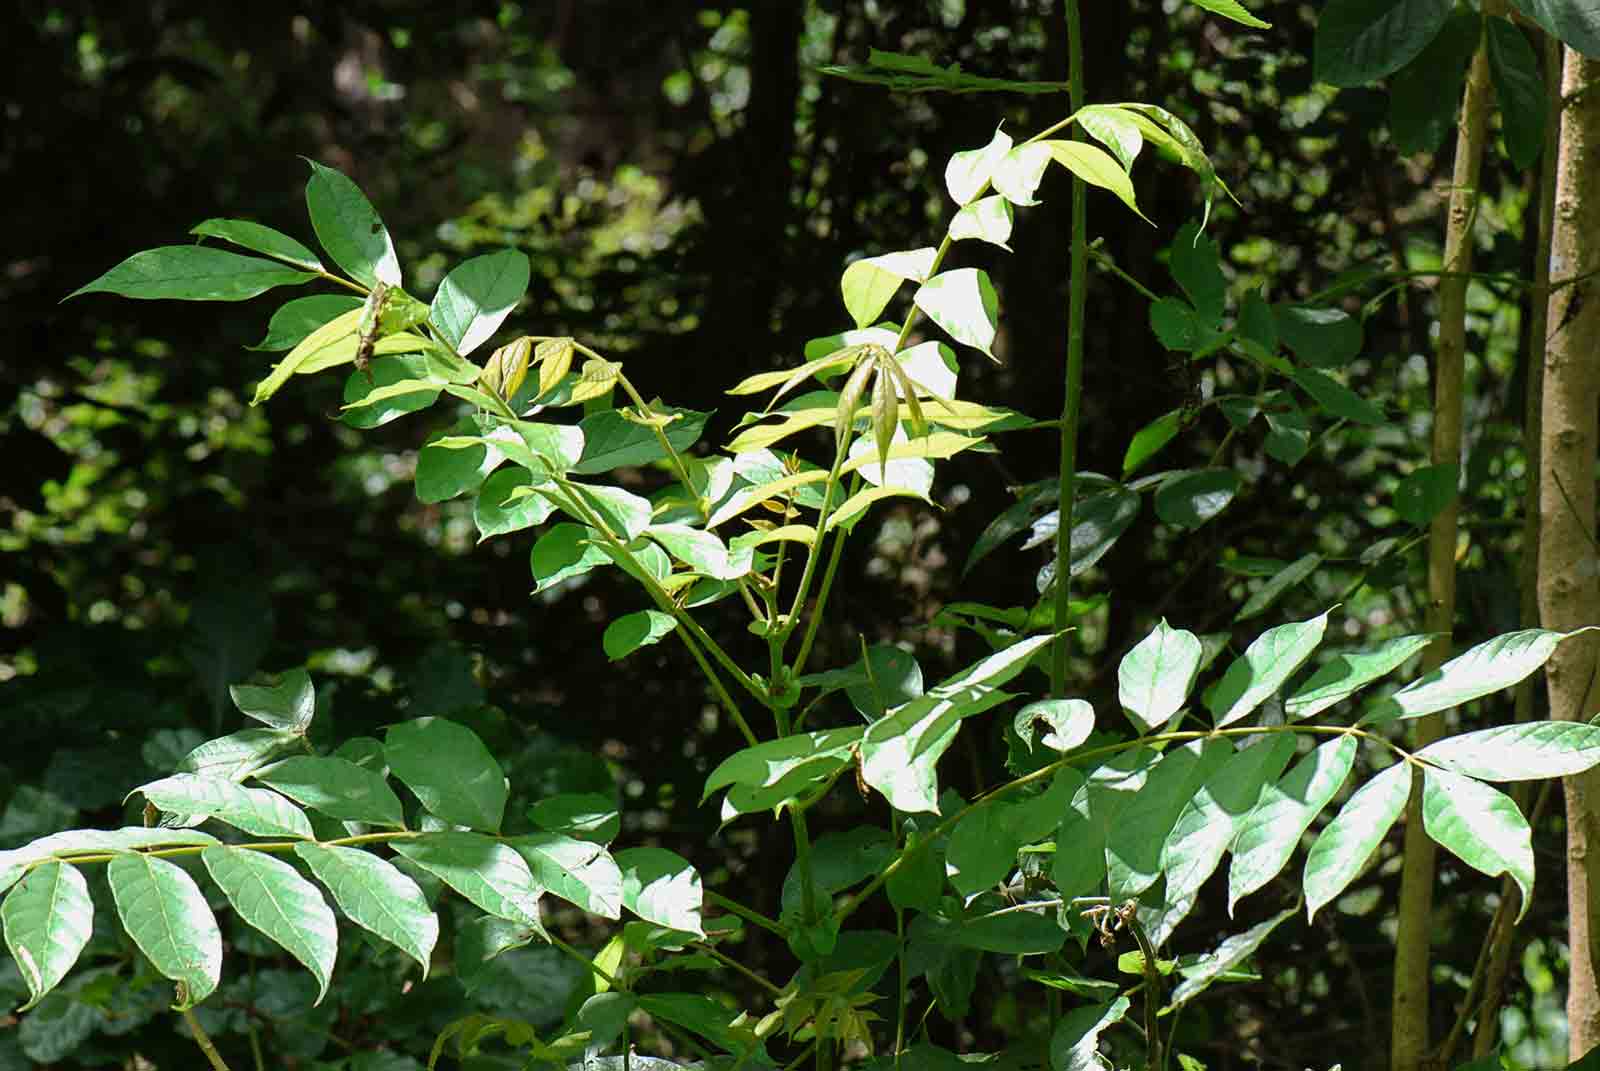 Spathodea campanulata subsp. nilotica